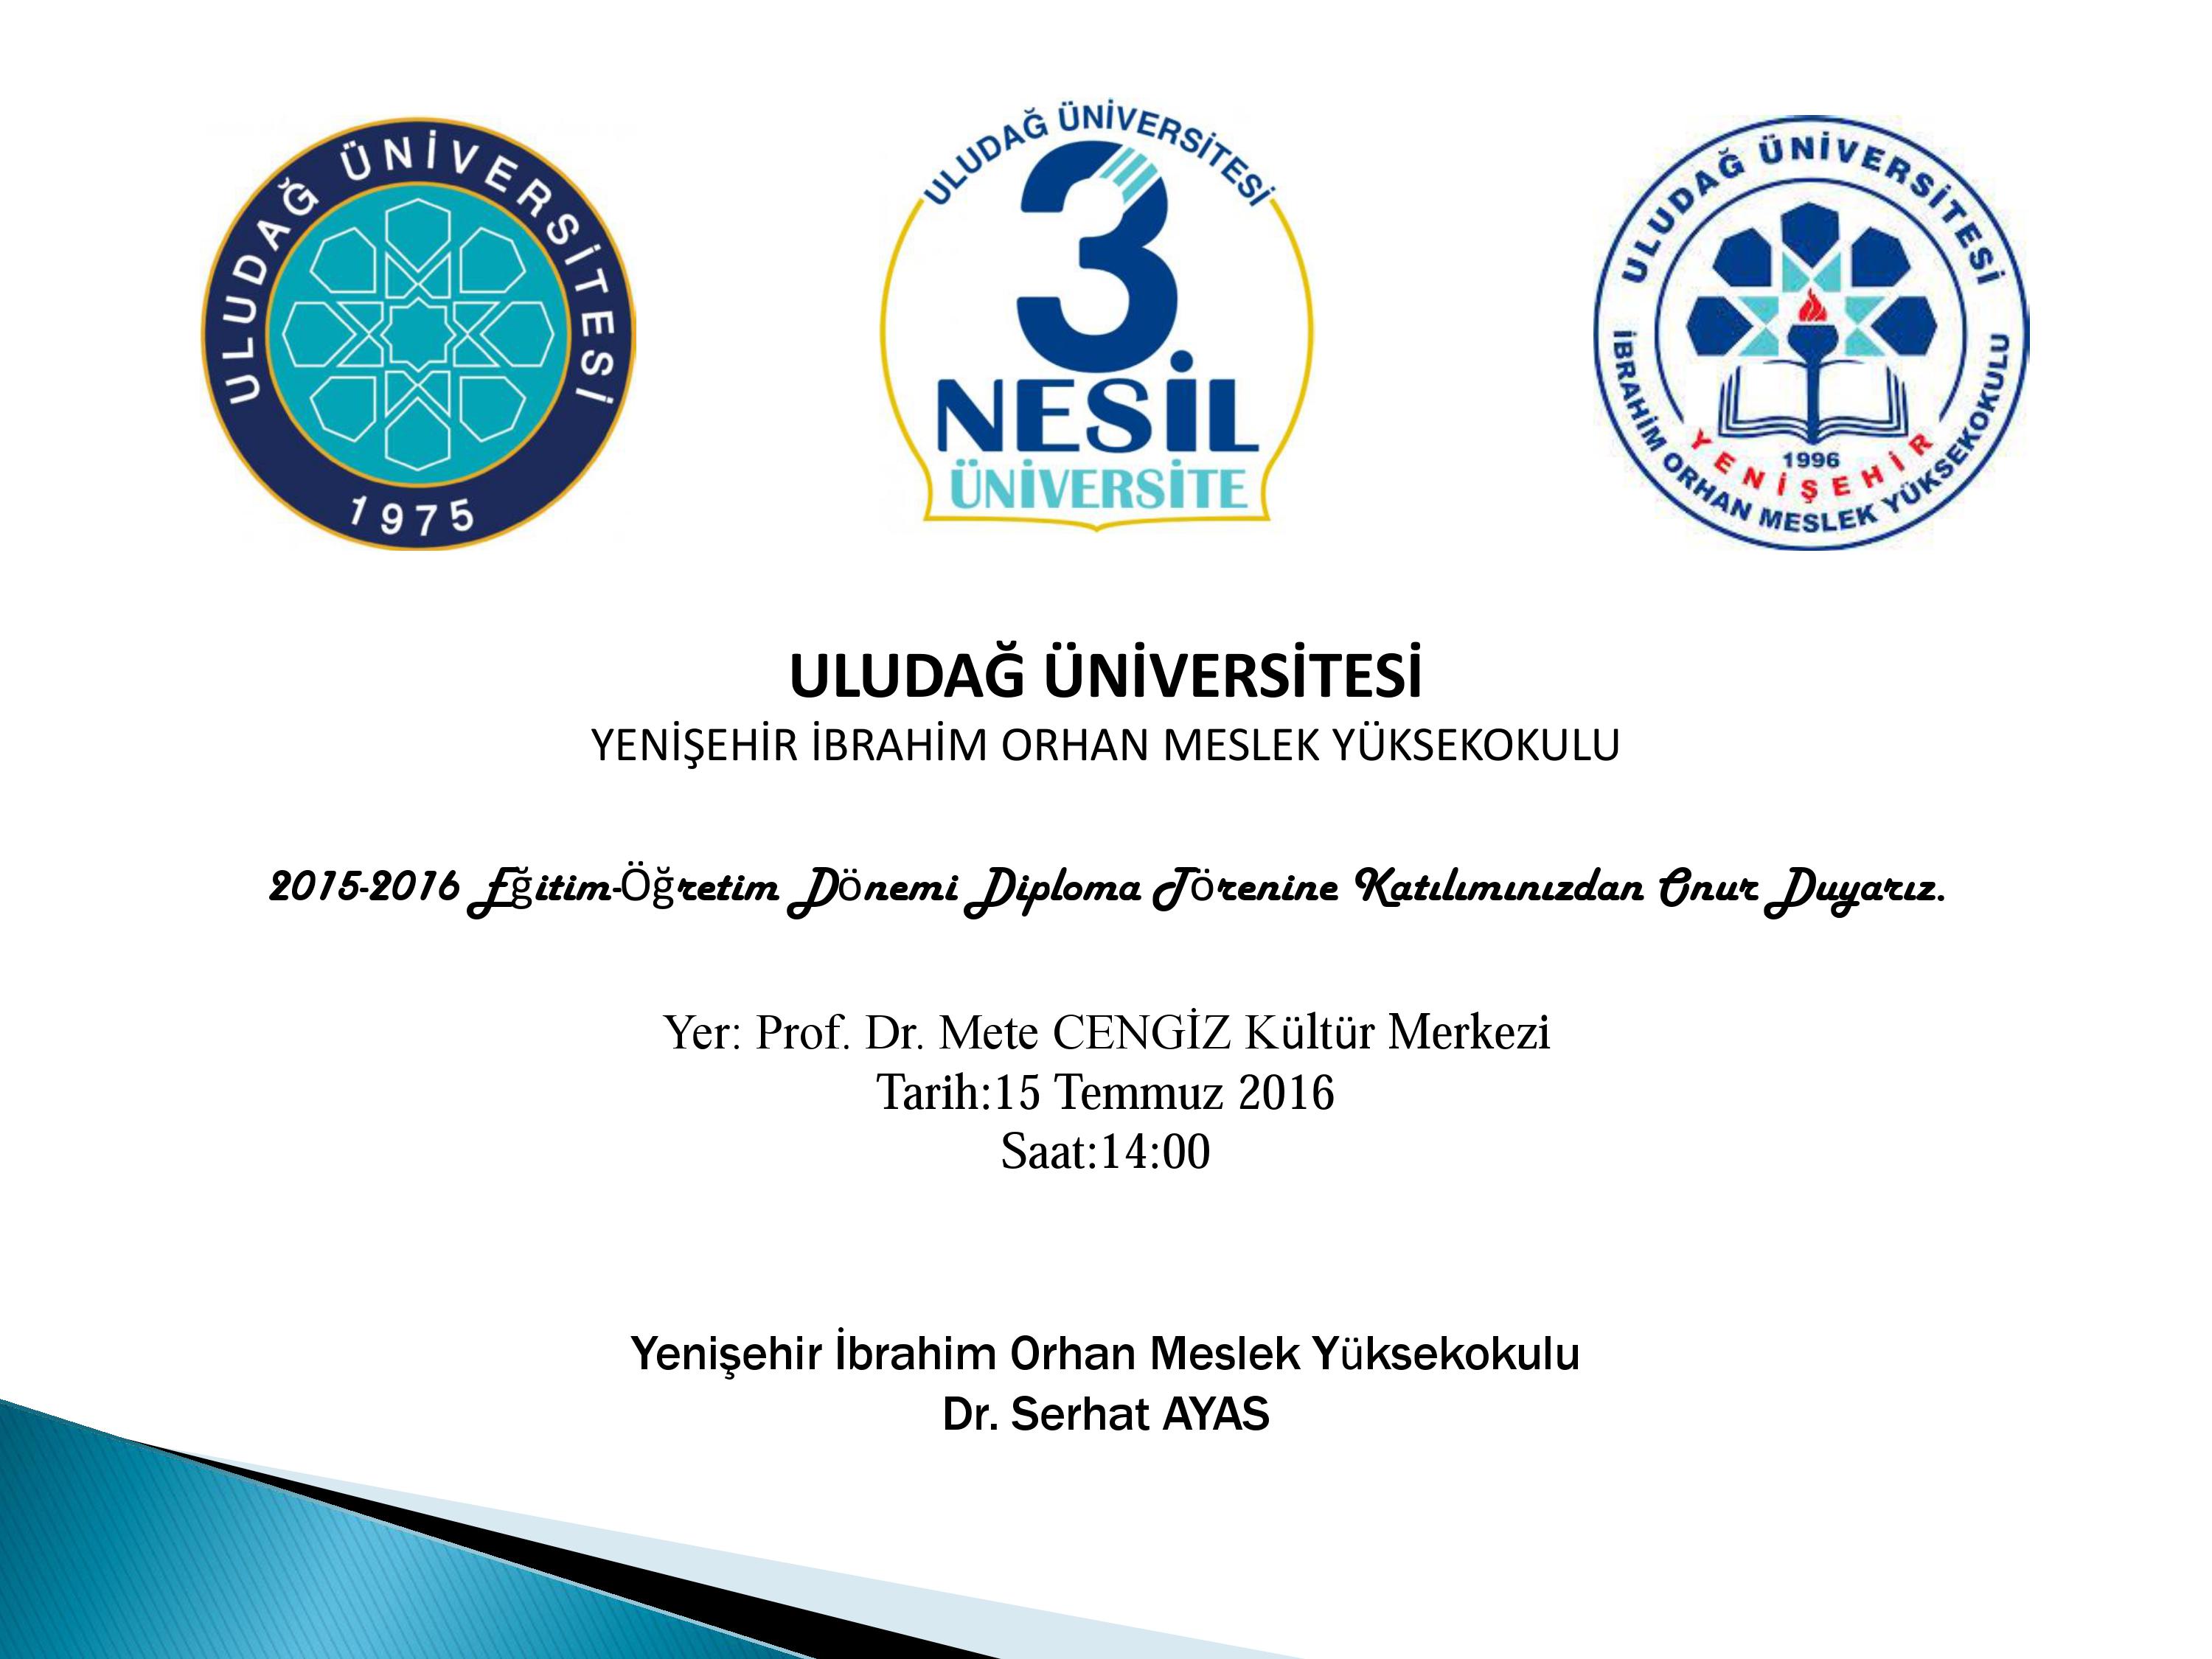  Yenişehir İbrahim Orhan Meslek Yüksekokulu 2015-2016 Diploma Töreni Davetiye 